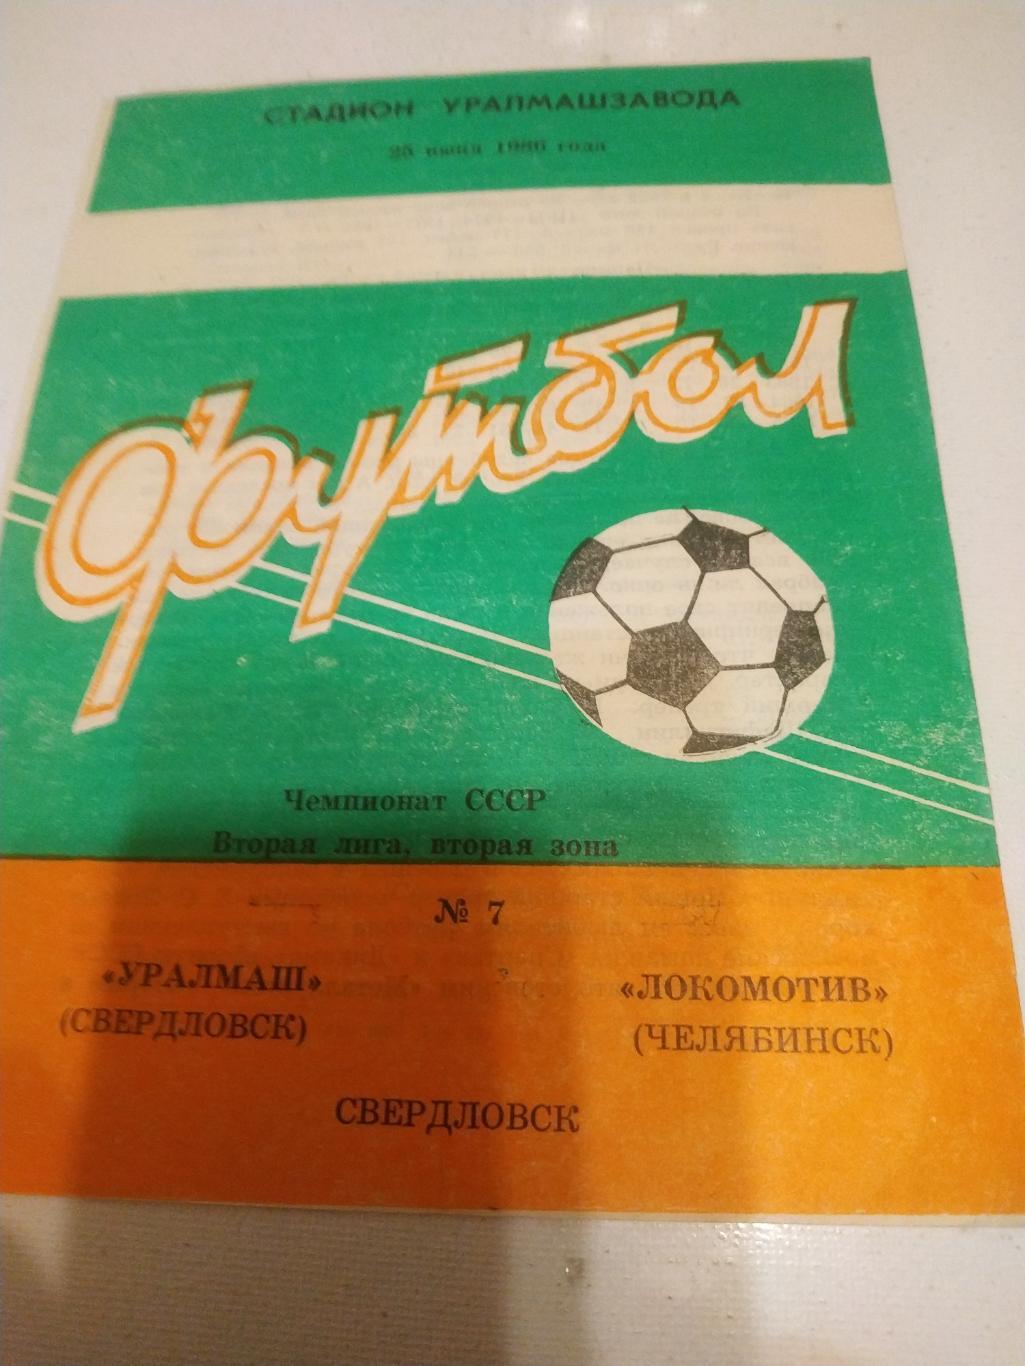 Уралмаш Свердловск - Локомотив Челябинск 1986